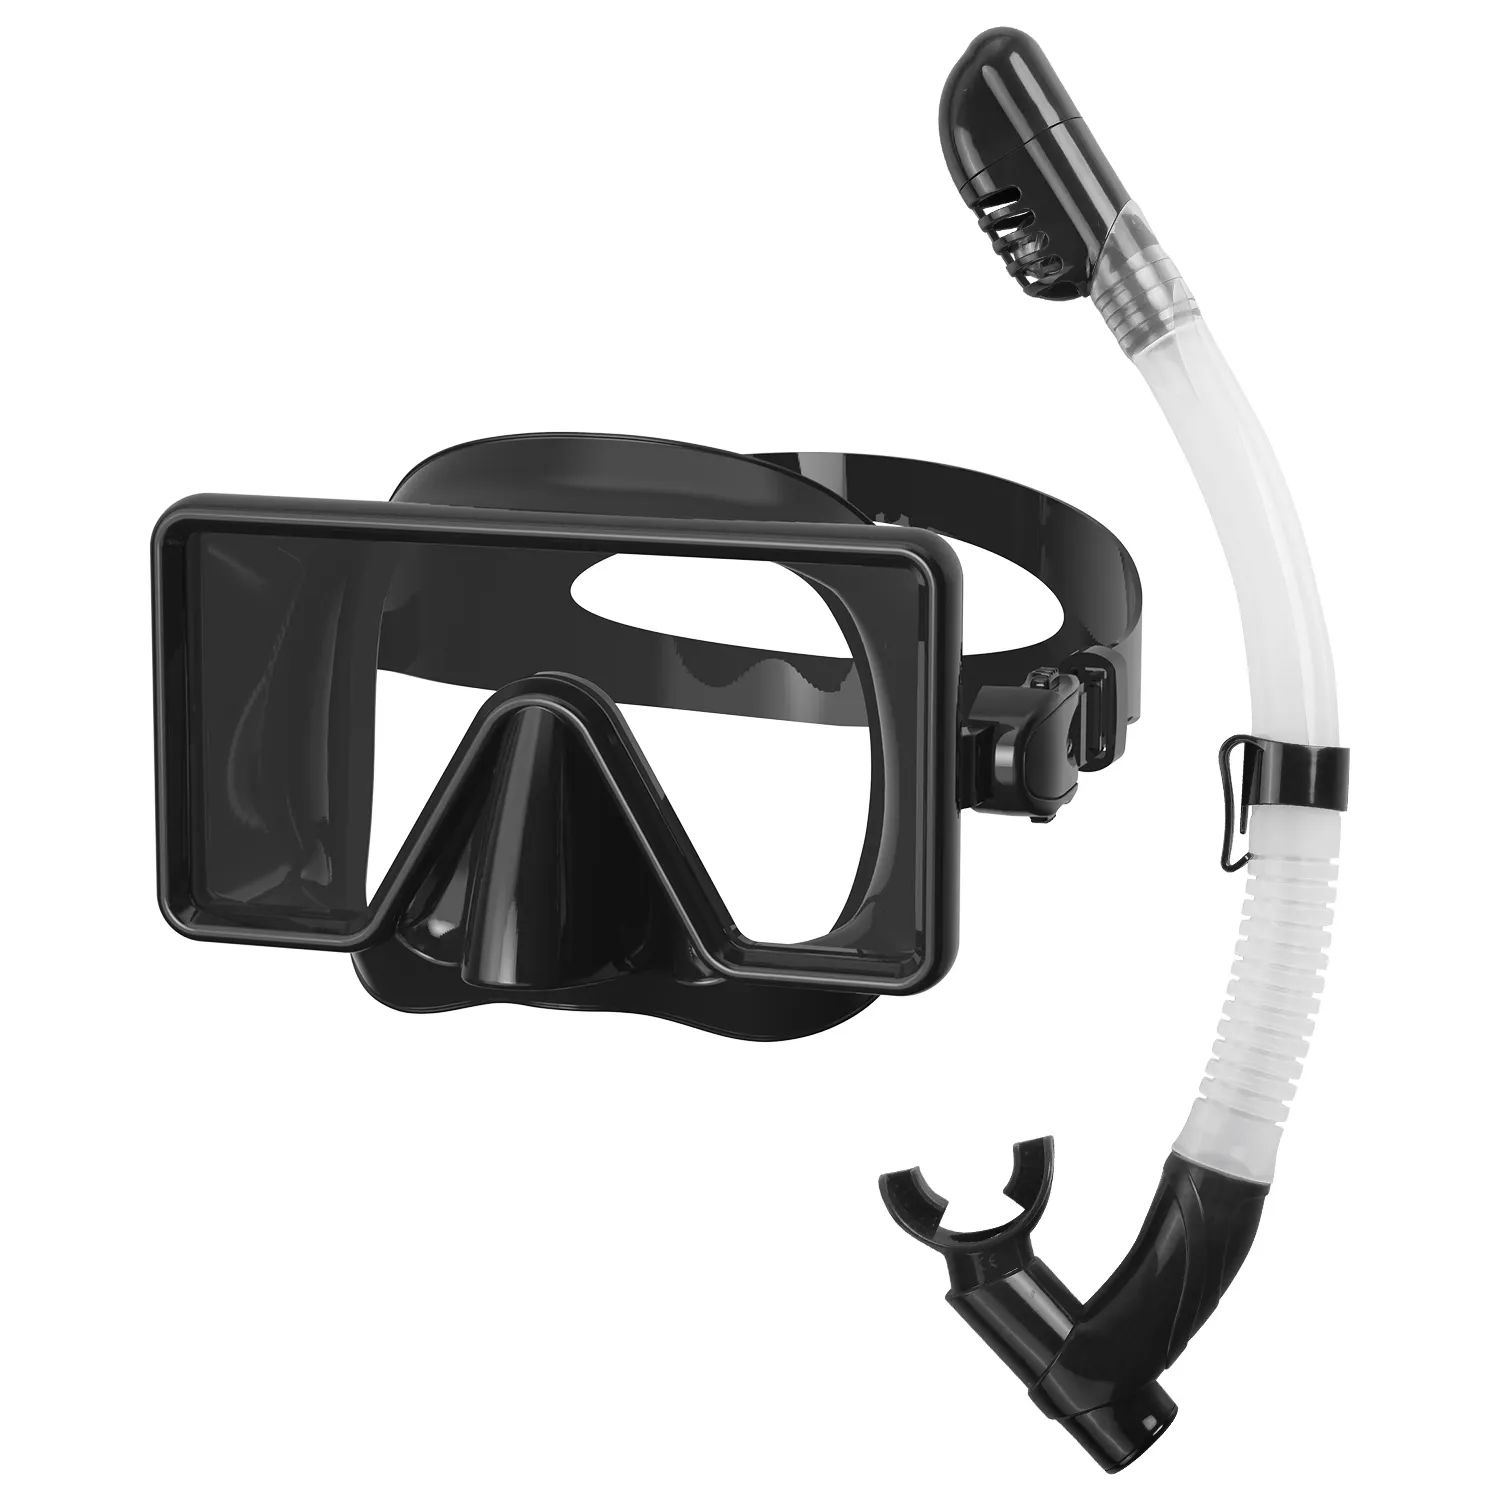 Fabrika OEM özel Logo şnorkel maske Set tam kuru silikon tüplü dalış maskesi ve şnorkel seti